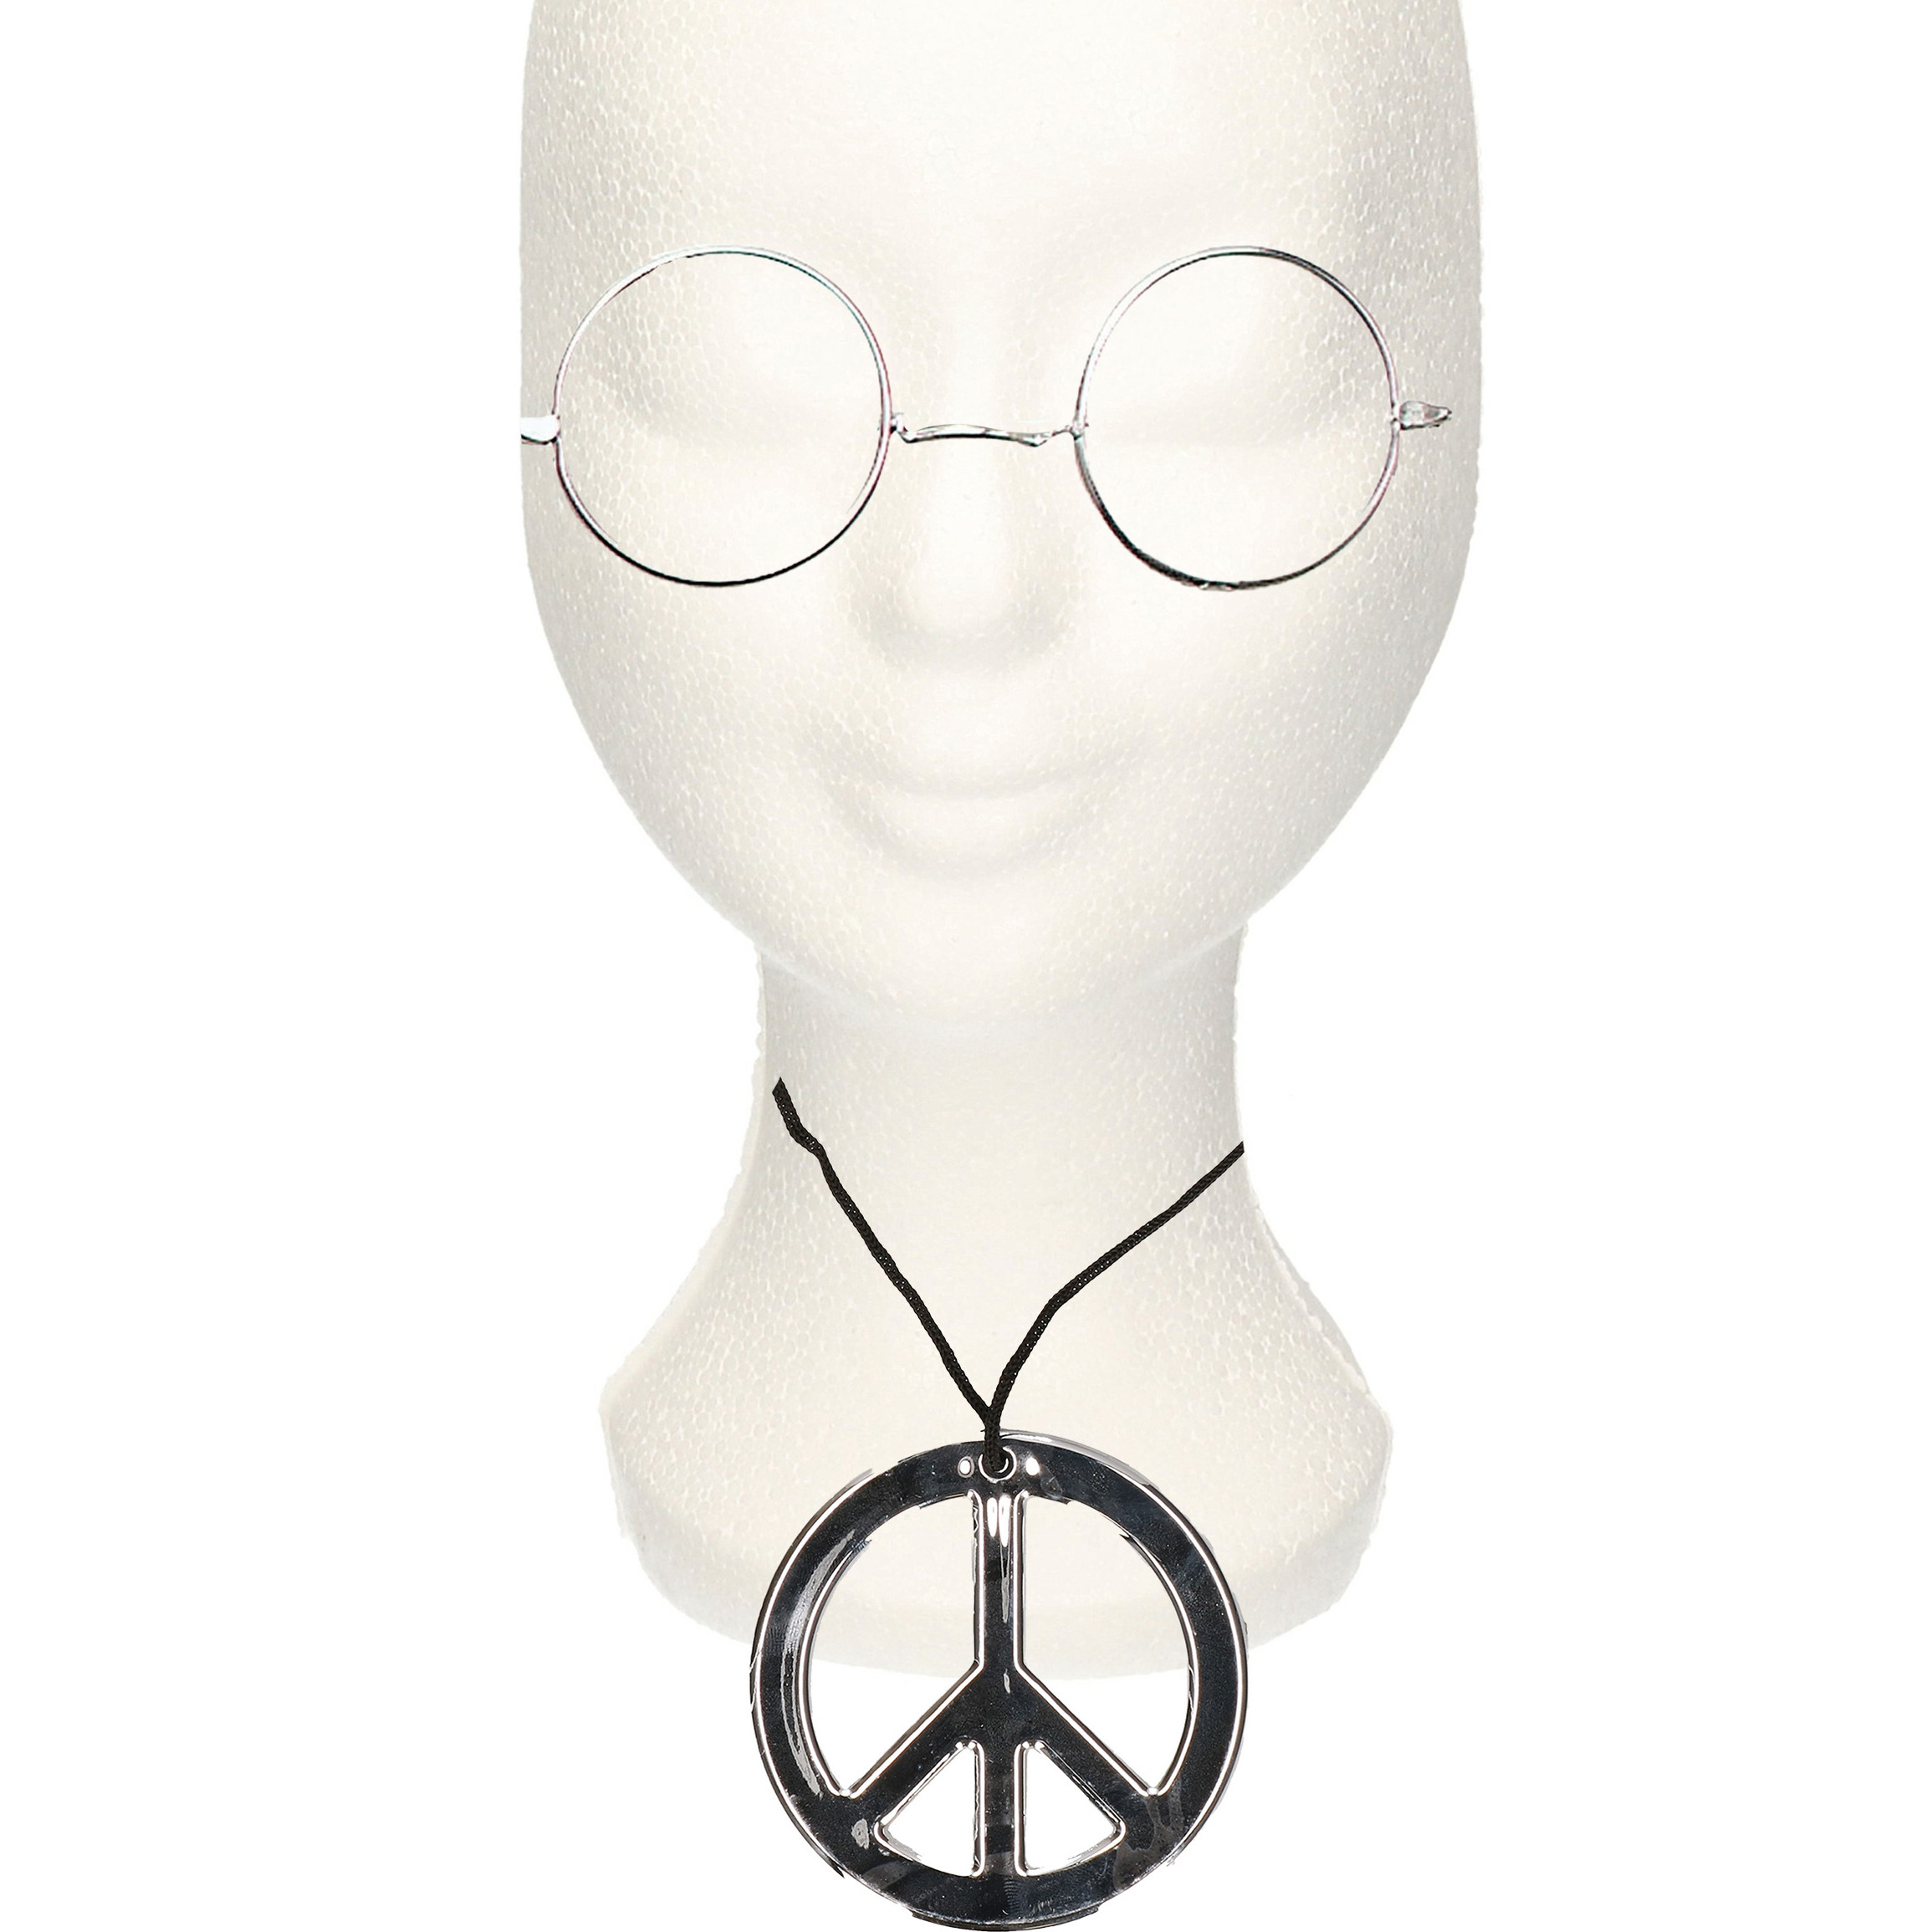 Hippie Flower Power verkleed set ketting met party bril